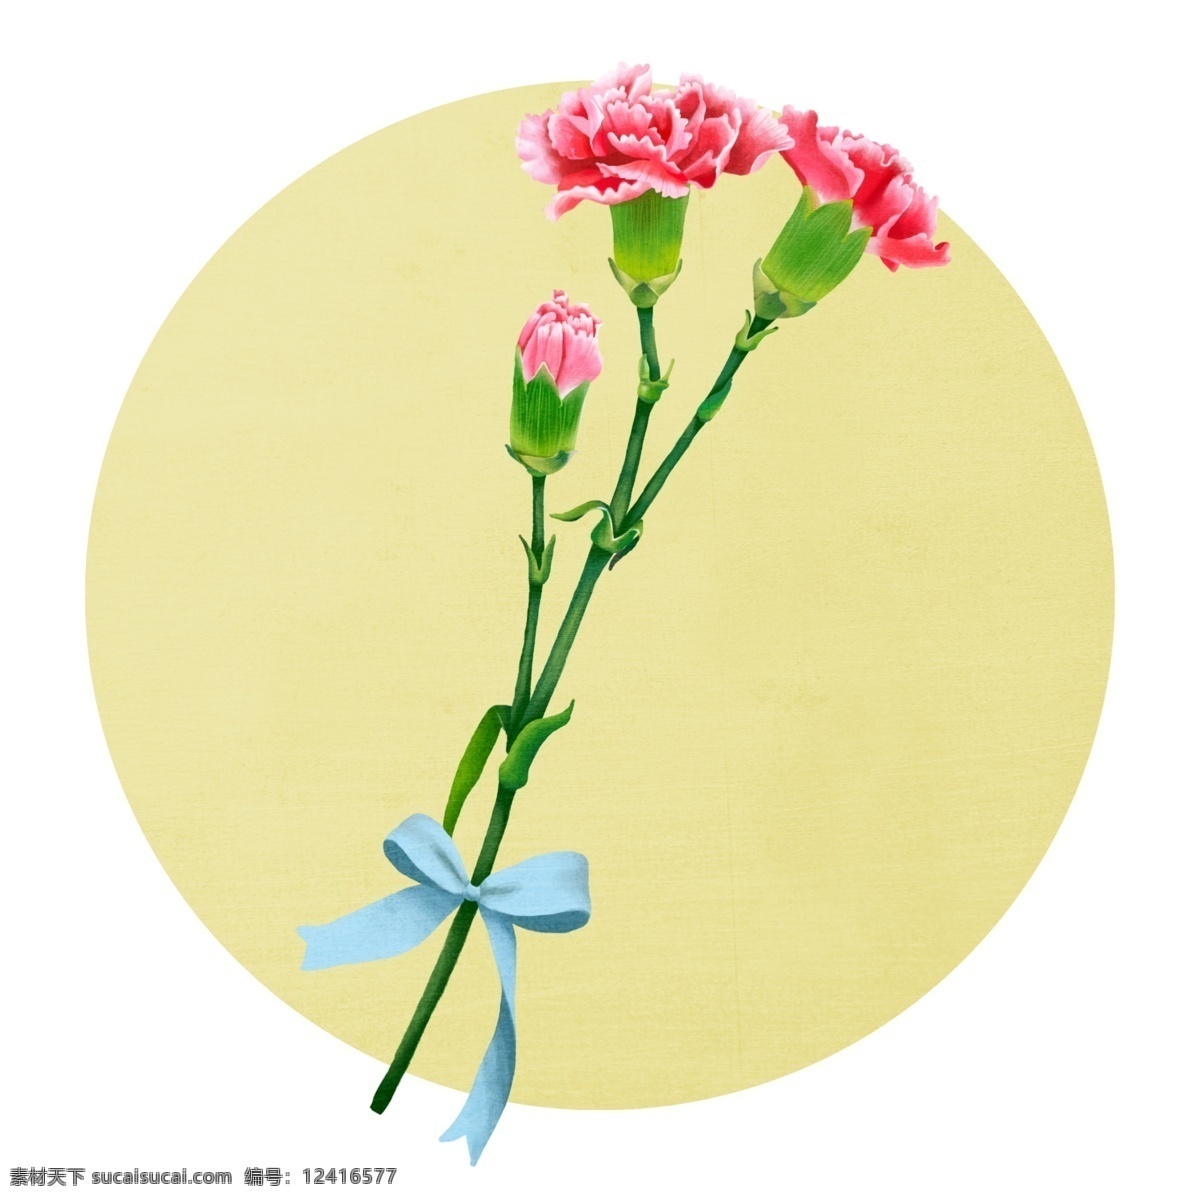 母亲节 康乃馨 手绘 风格 插画 母亲 花卉 花朵 花 植物 礼物 花束 节日